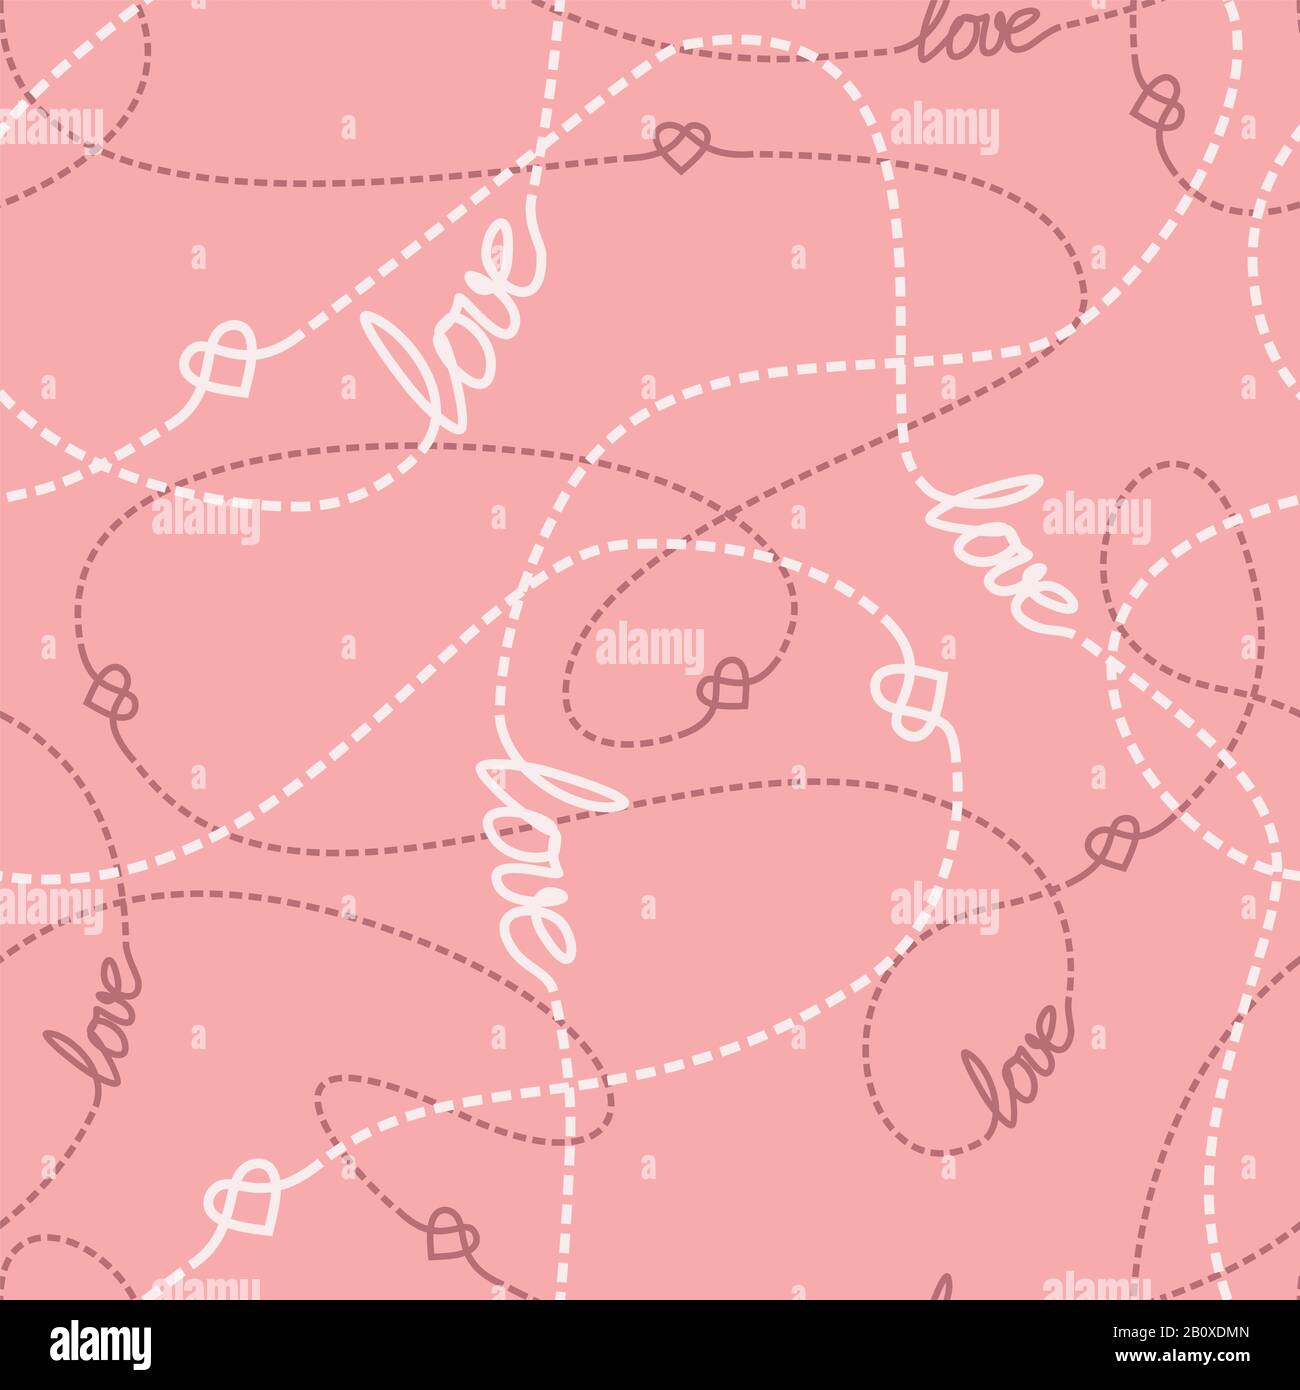 Verworrene Linien und Herzen nahtloses Muster. Wiederholter abstrakter Hintergrund mit Liebes-Schriftzug, Herzen und gestrichelten durchgezwirbten Linien. Romantischer Konzepttex Stock Vektor